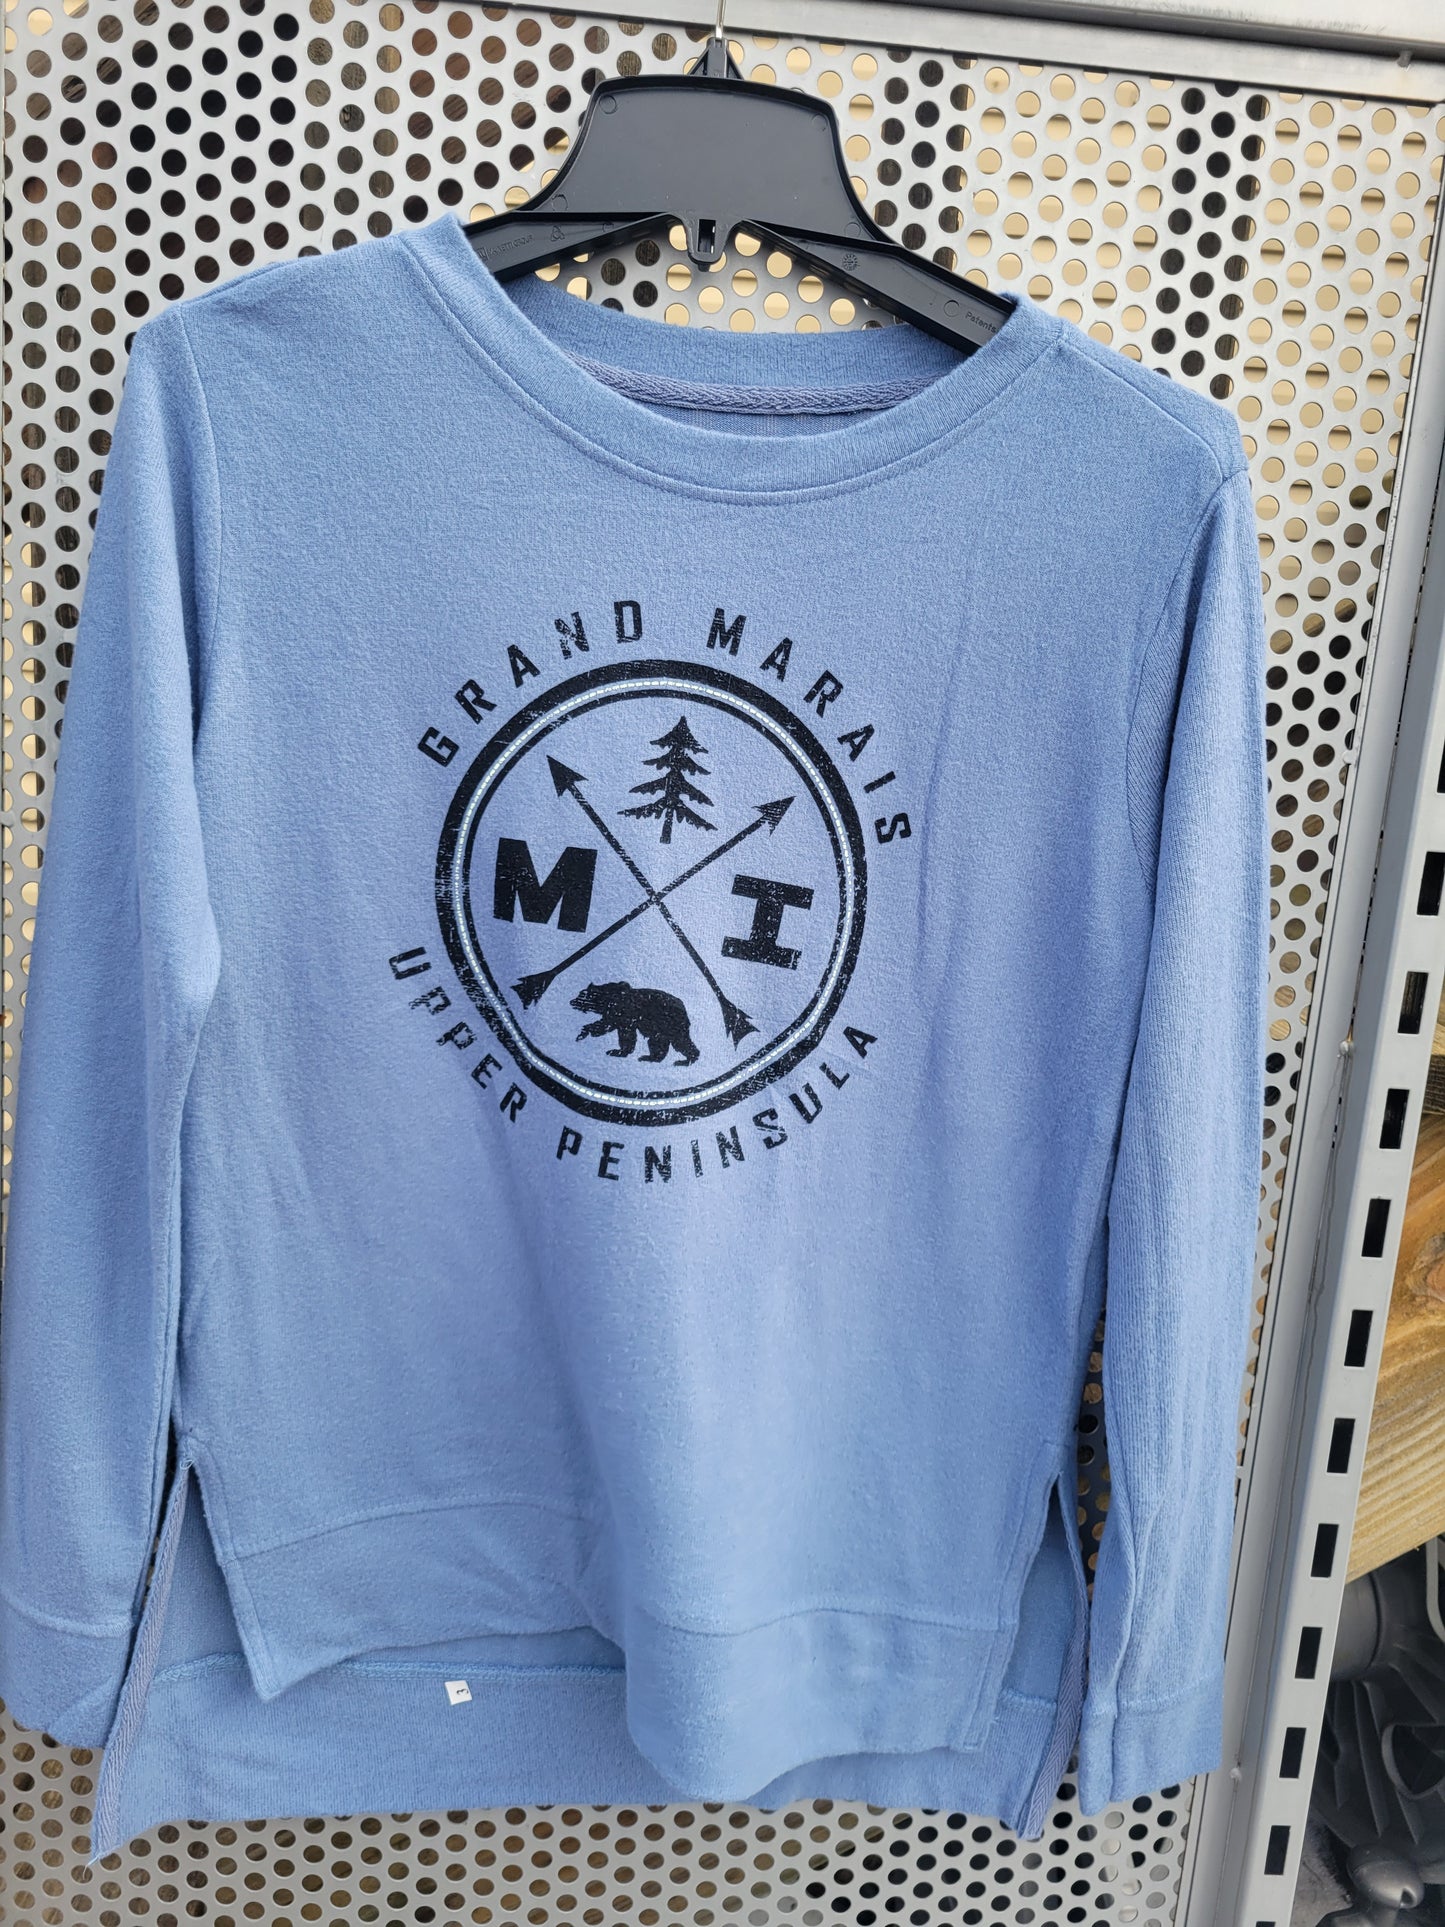 Dusty Rose or Misty Blue Crew sweatshirt